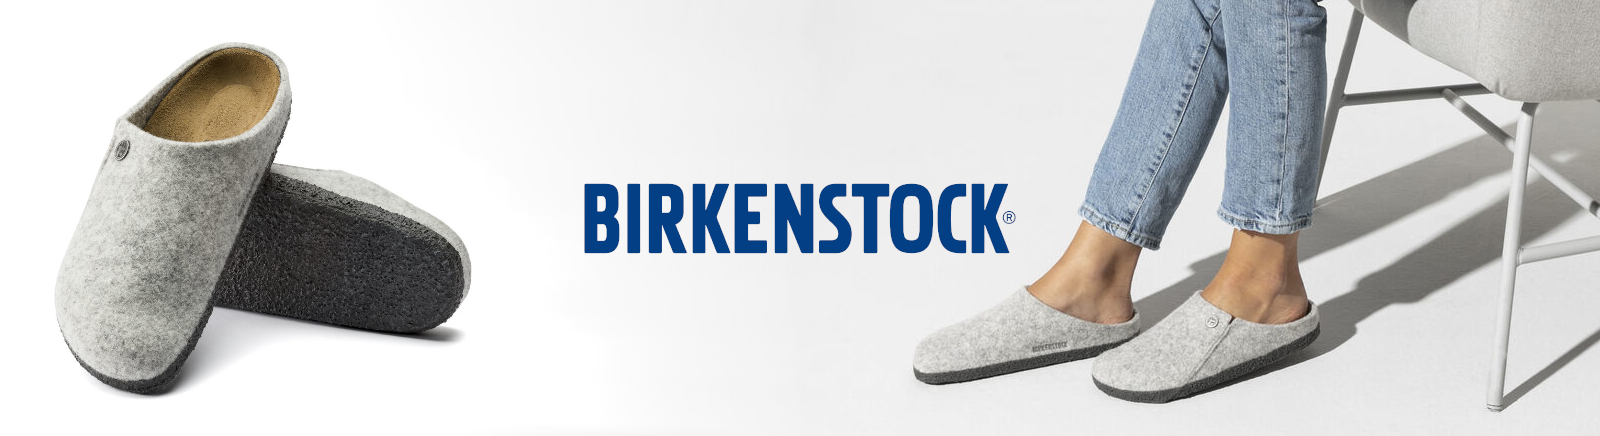 Birkenstock Markenschuhe online kaufen im Shop von GISY